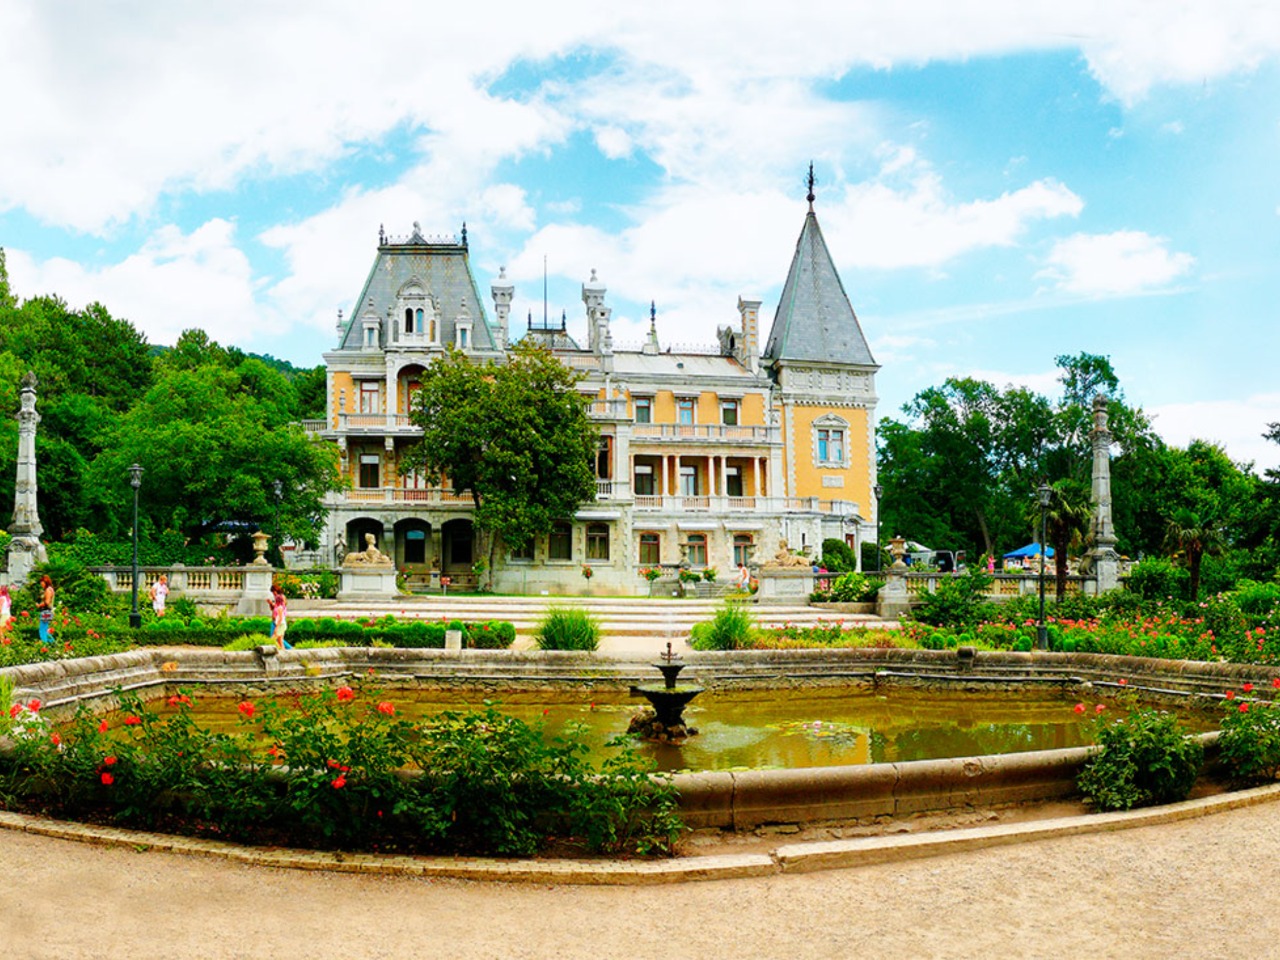 “Блистательное трио”: дворцы Крыма из Алушты | Цена 17600₽, отзывы, описание экскурсии